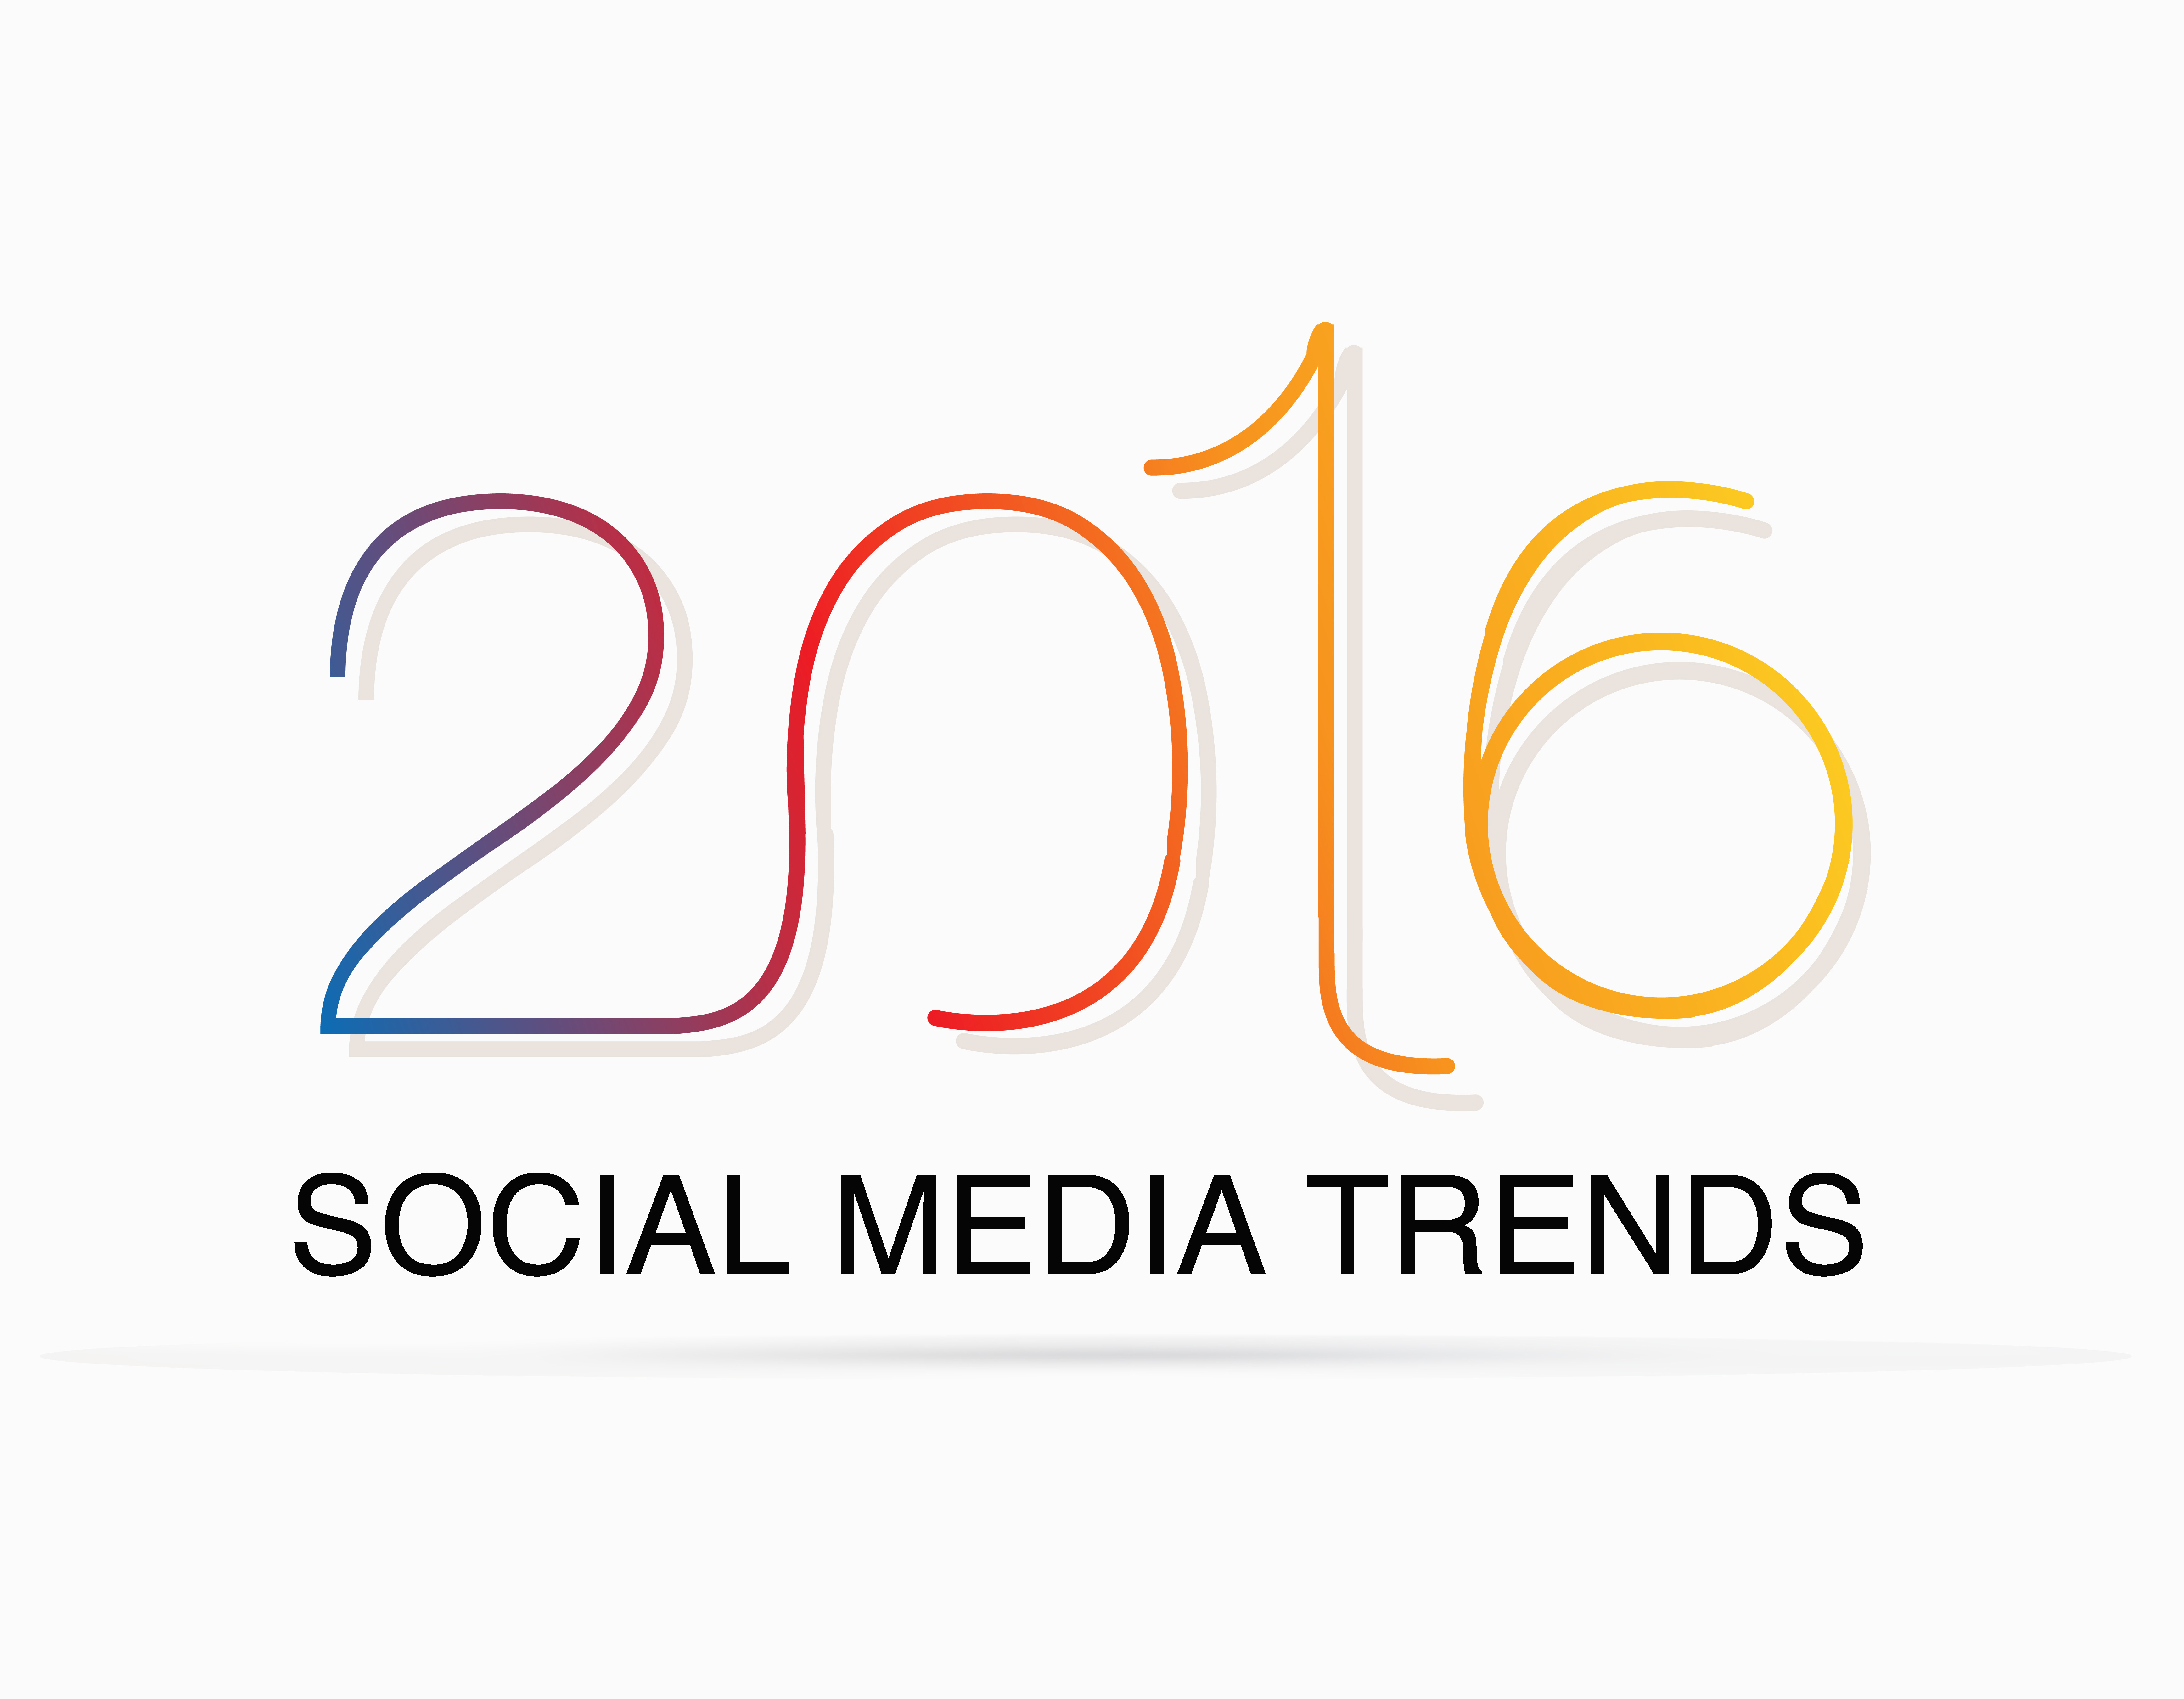 Die wichtigsten Social-Media-Trends für 2016: Live-Streaming, On-Platform-Content und vieles mehr